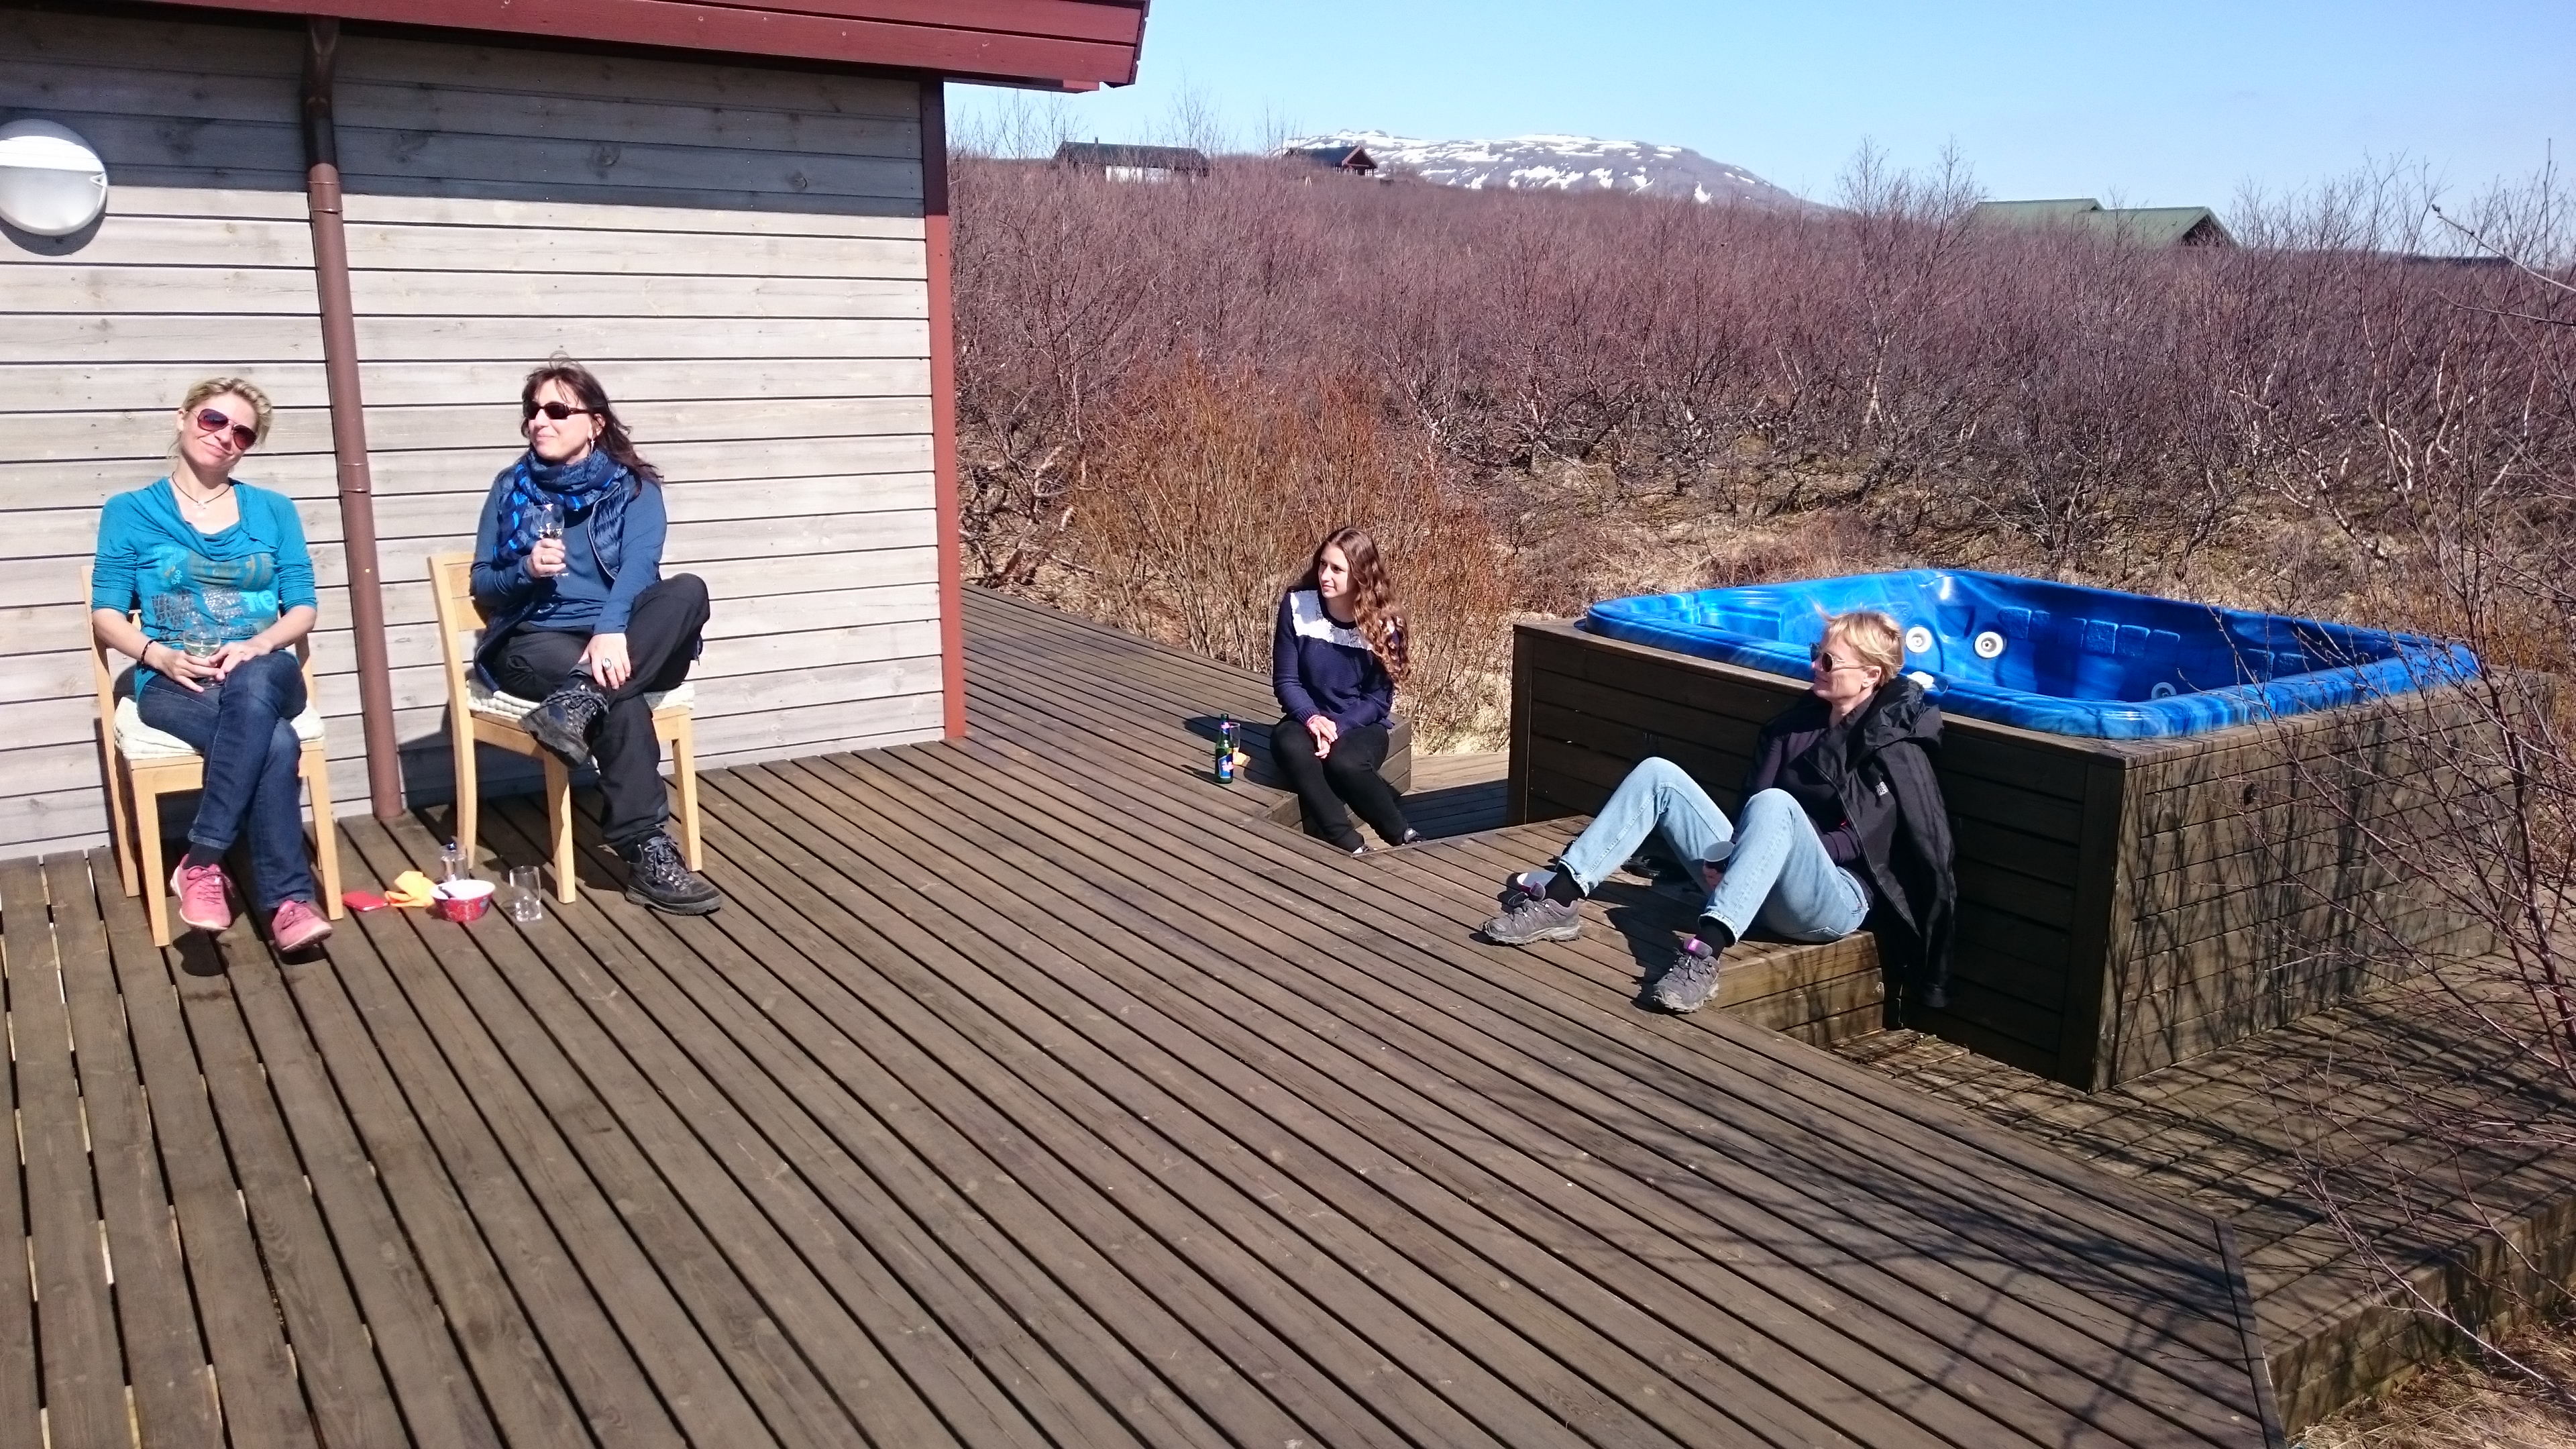 Journalisten sonnen sich auf der Terasse eines Ferienhauses in Island